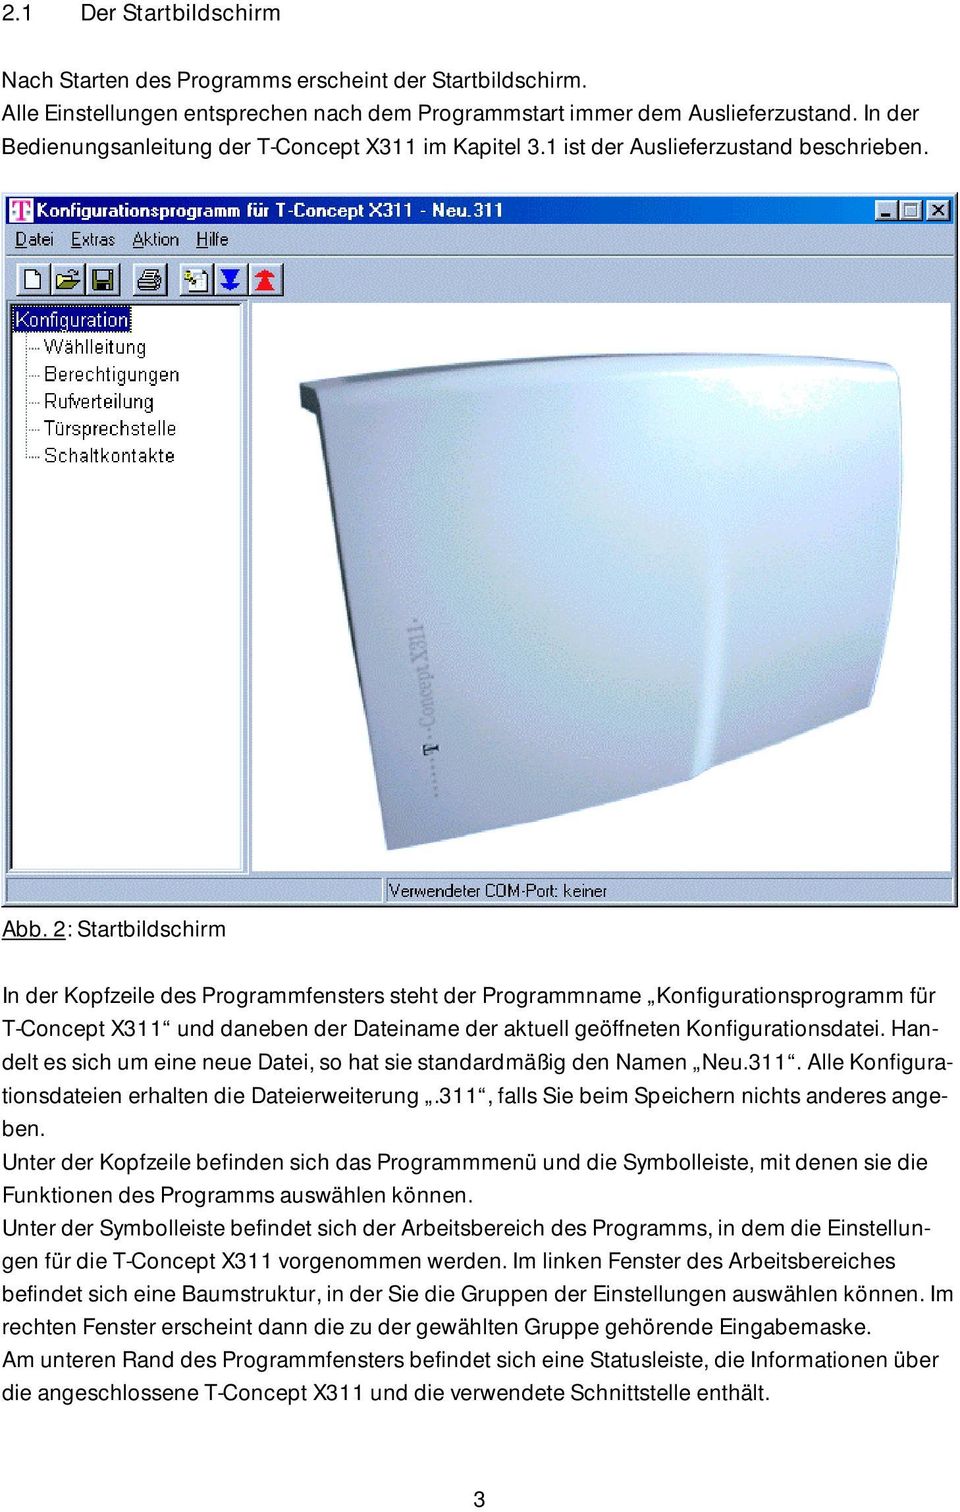 2: Startbildschirm In der Kopfzeile des Programmfensters steht der Programmname Konfigurationsprogramm für T-Concept X311 und daneben der Dateiname der aktuell geöffneten Konfigurationsdatei.